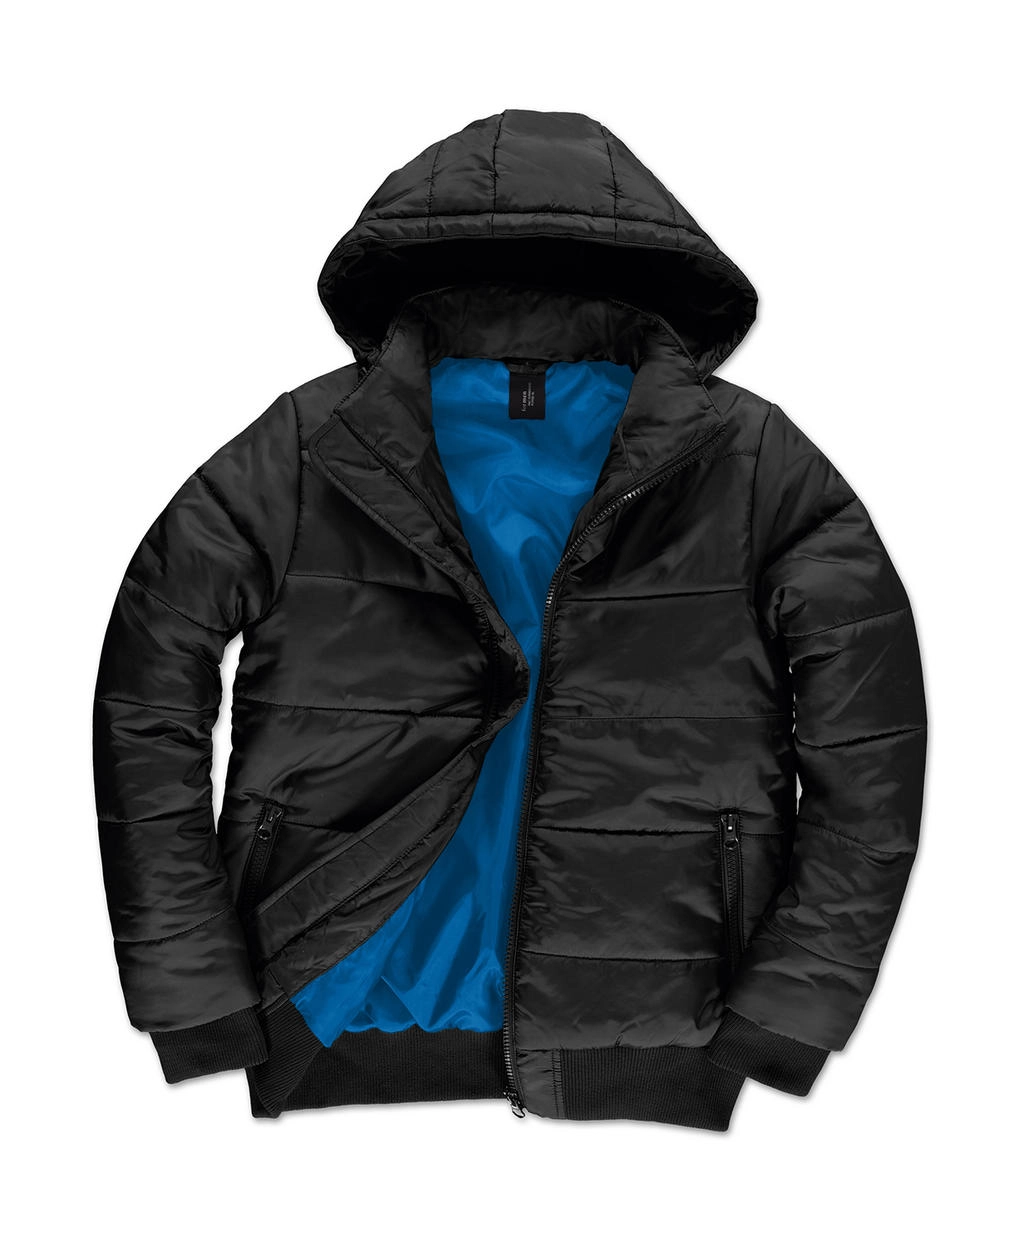 Superhood/men Jacket zum Besticken und Bedrucken in der Farbe Black/Cobalt Blue mit Ihren Logo, Schriftzug oder Motiv.